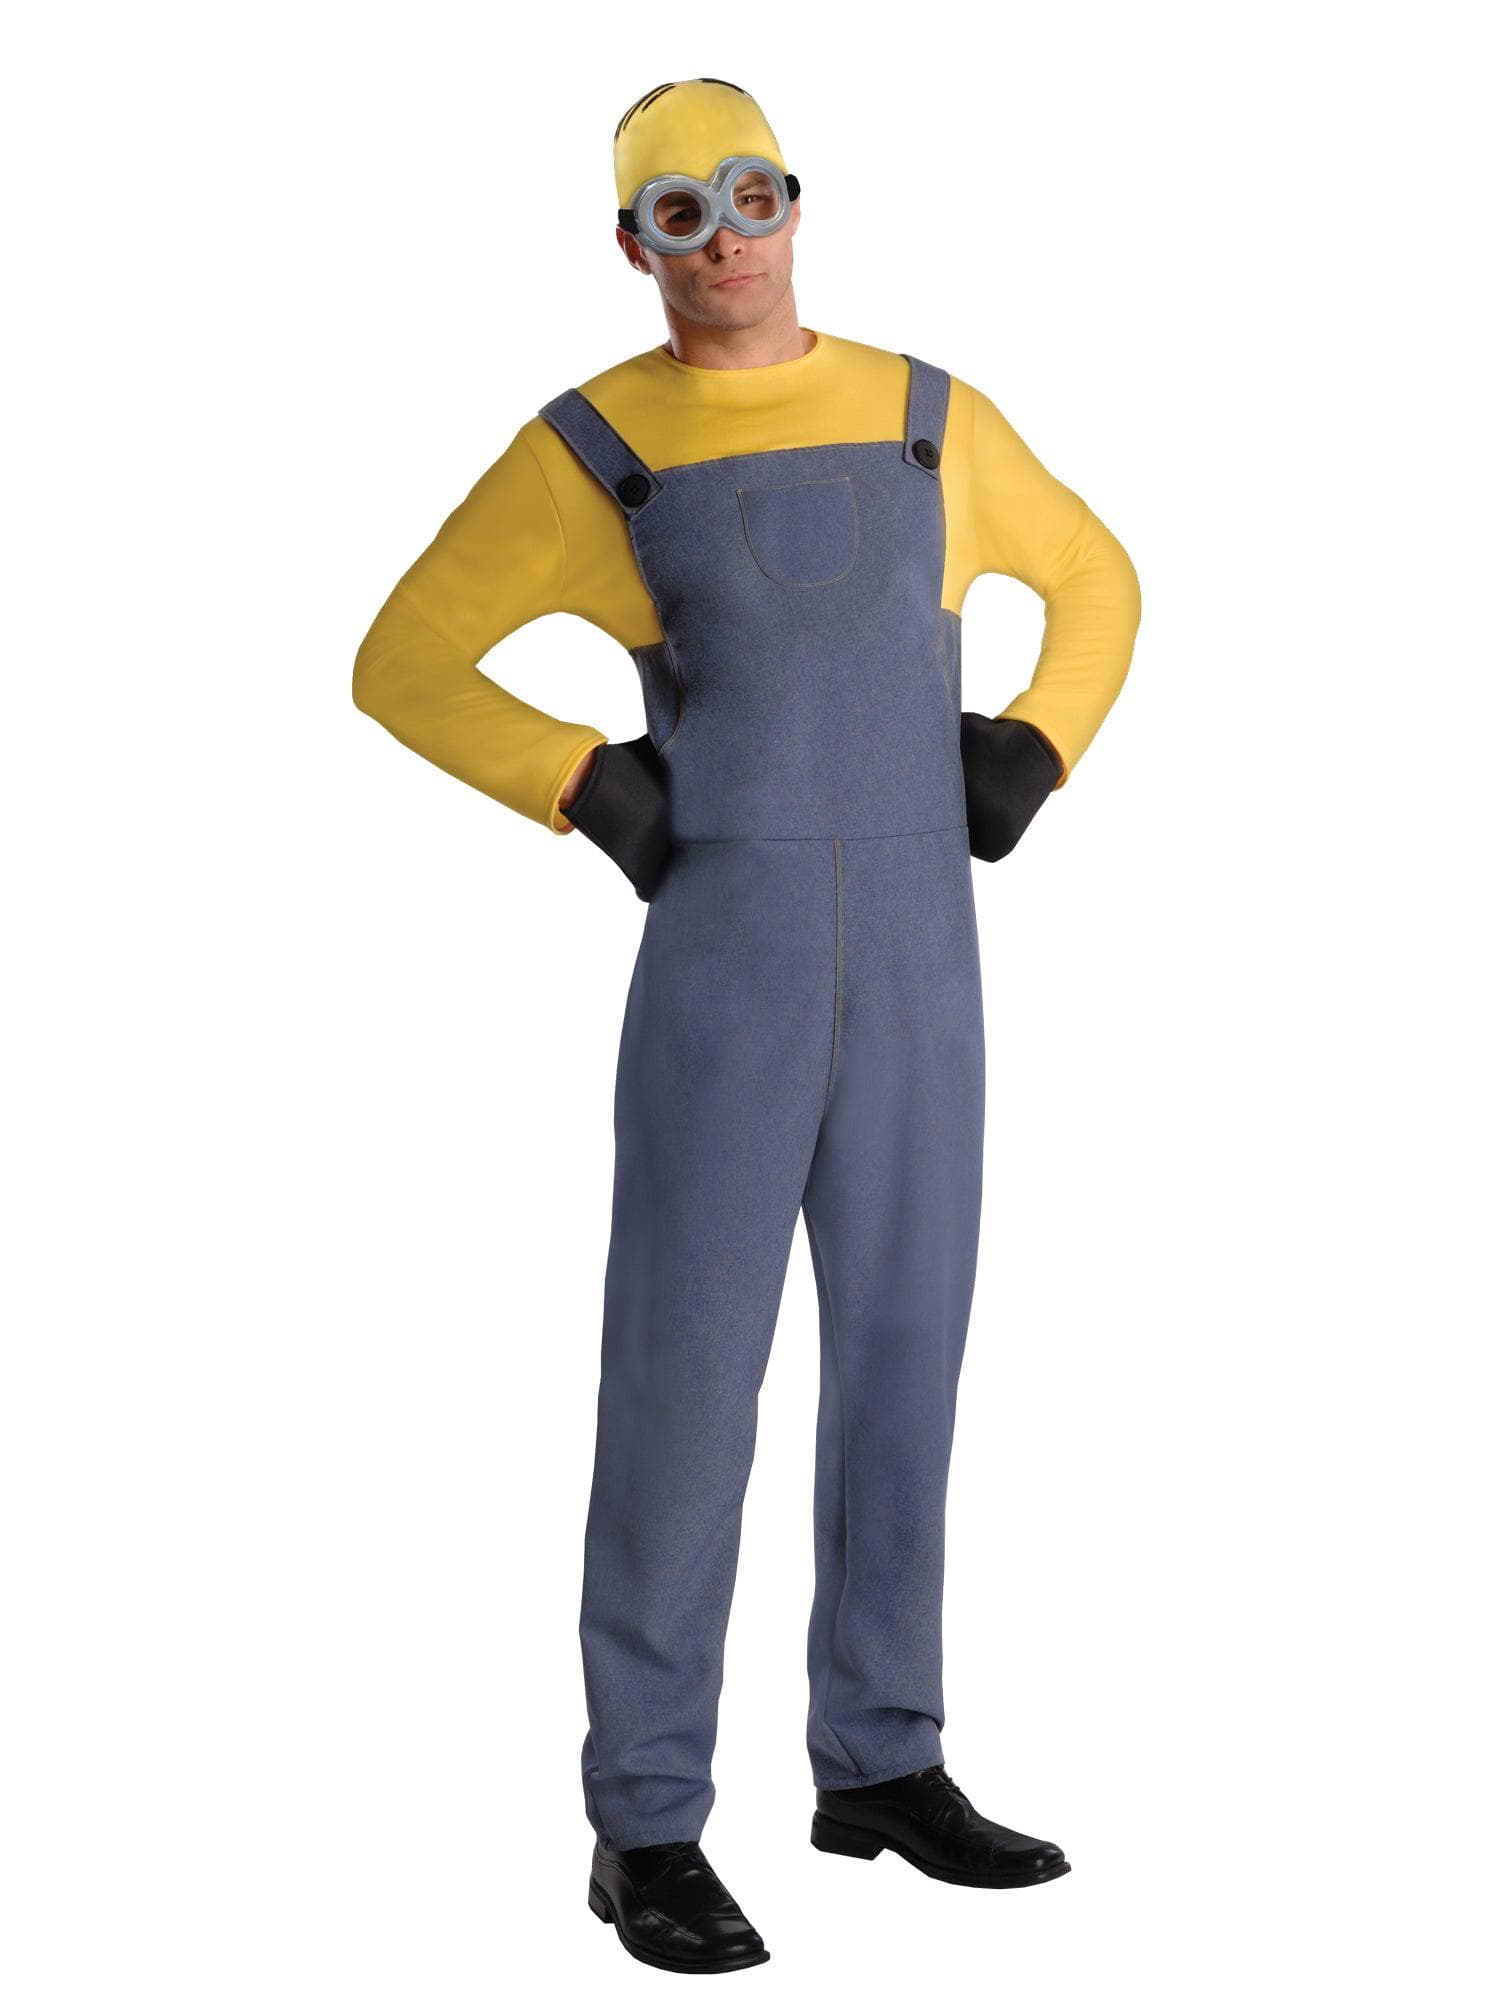 Men's Despicable Me Minion Costume - costumes.com